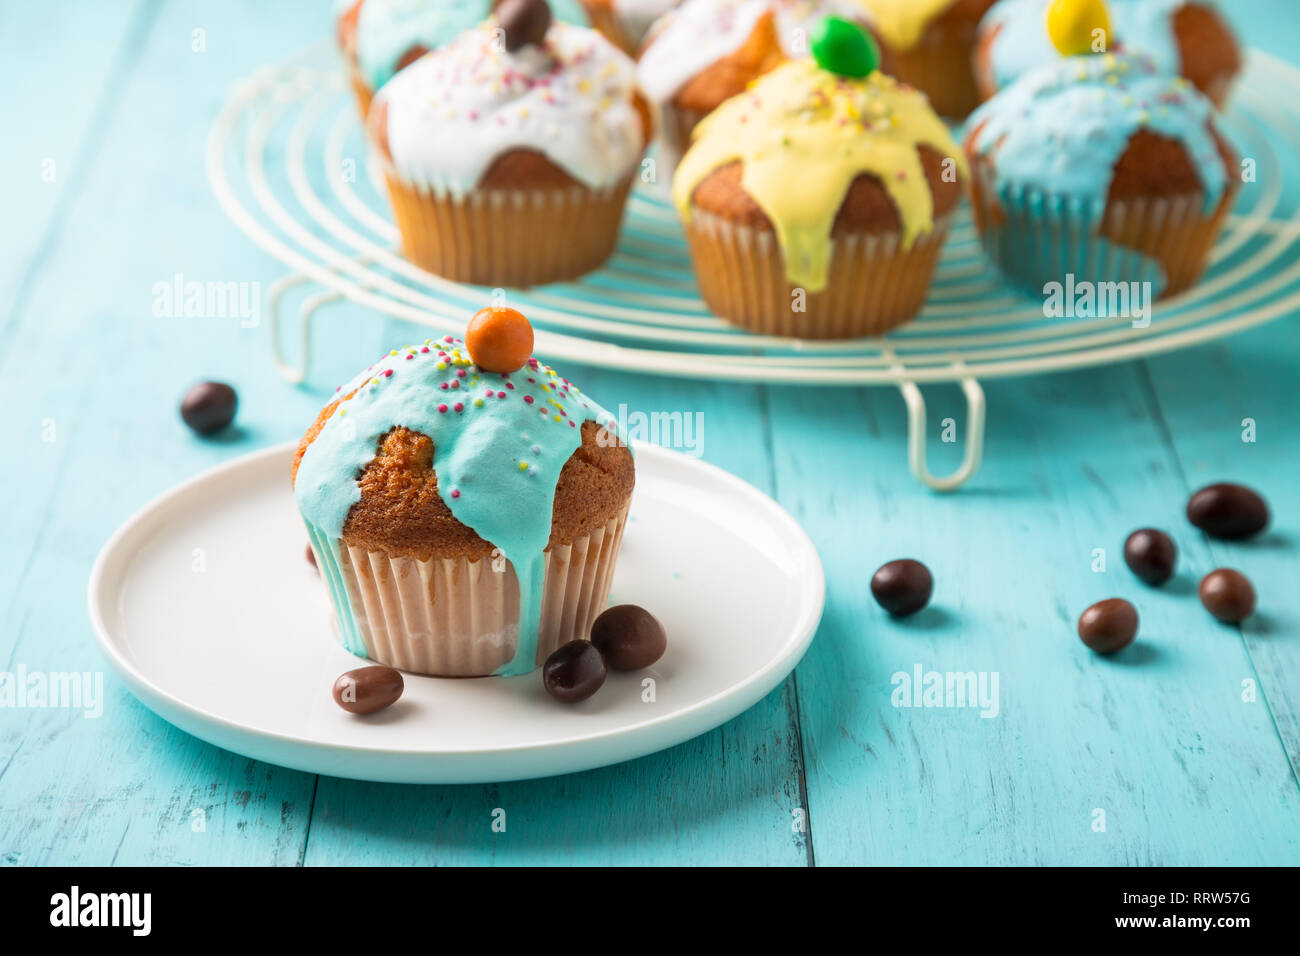 La pasqua o il compleanno tortine vetrate colorate con lo zucchero e un pizzico di cioccolato per una festa per bambini su una tavola di legno tabella turchese Foto Stock